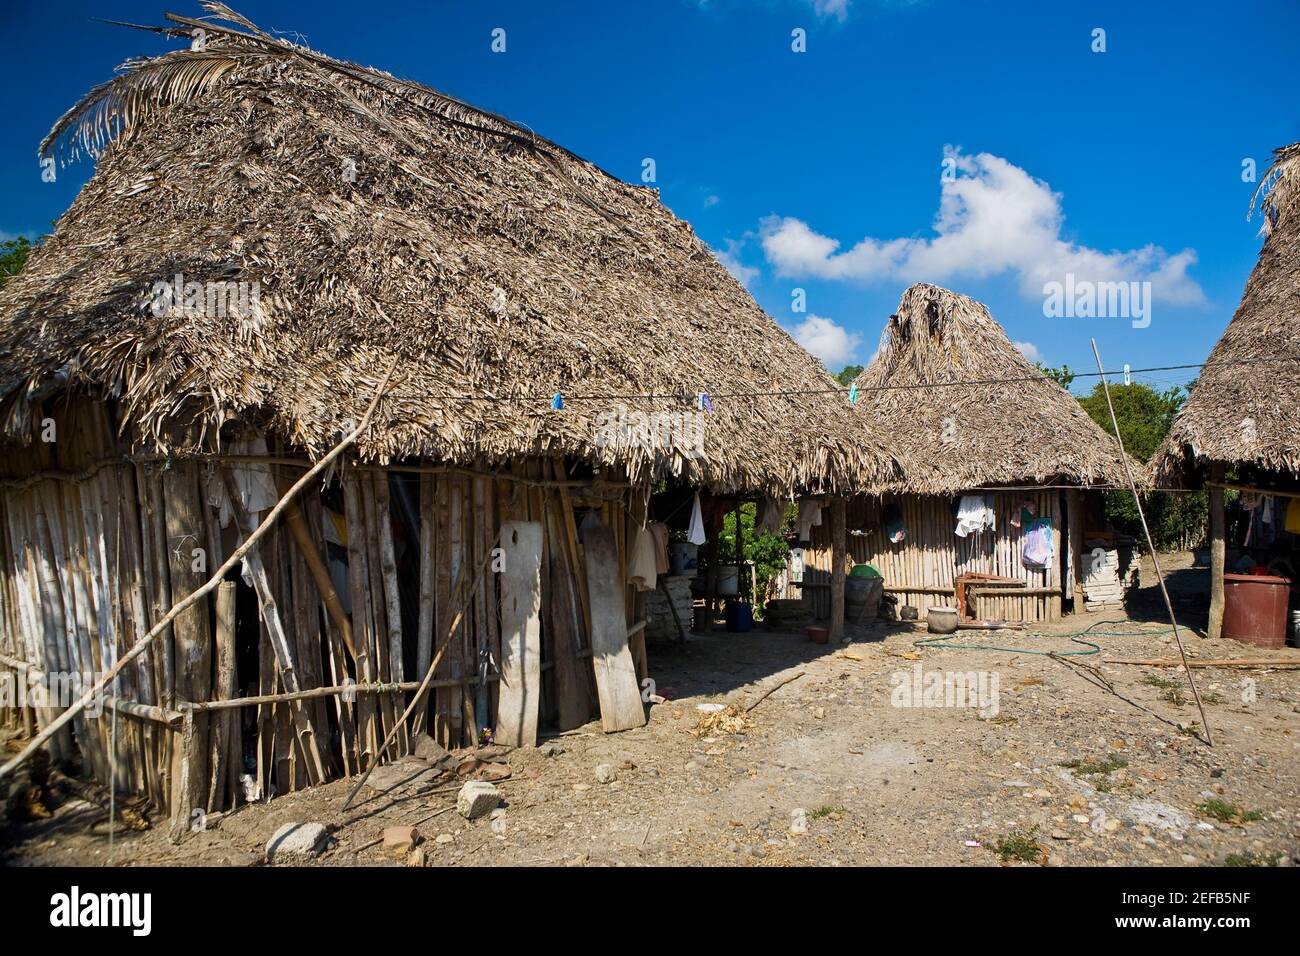 Casas en un pueblo, Hidalgo, Papantla, Veracruz, México Fotografía de stock  - Alamy